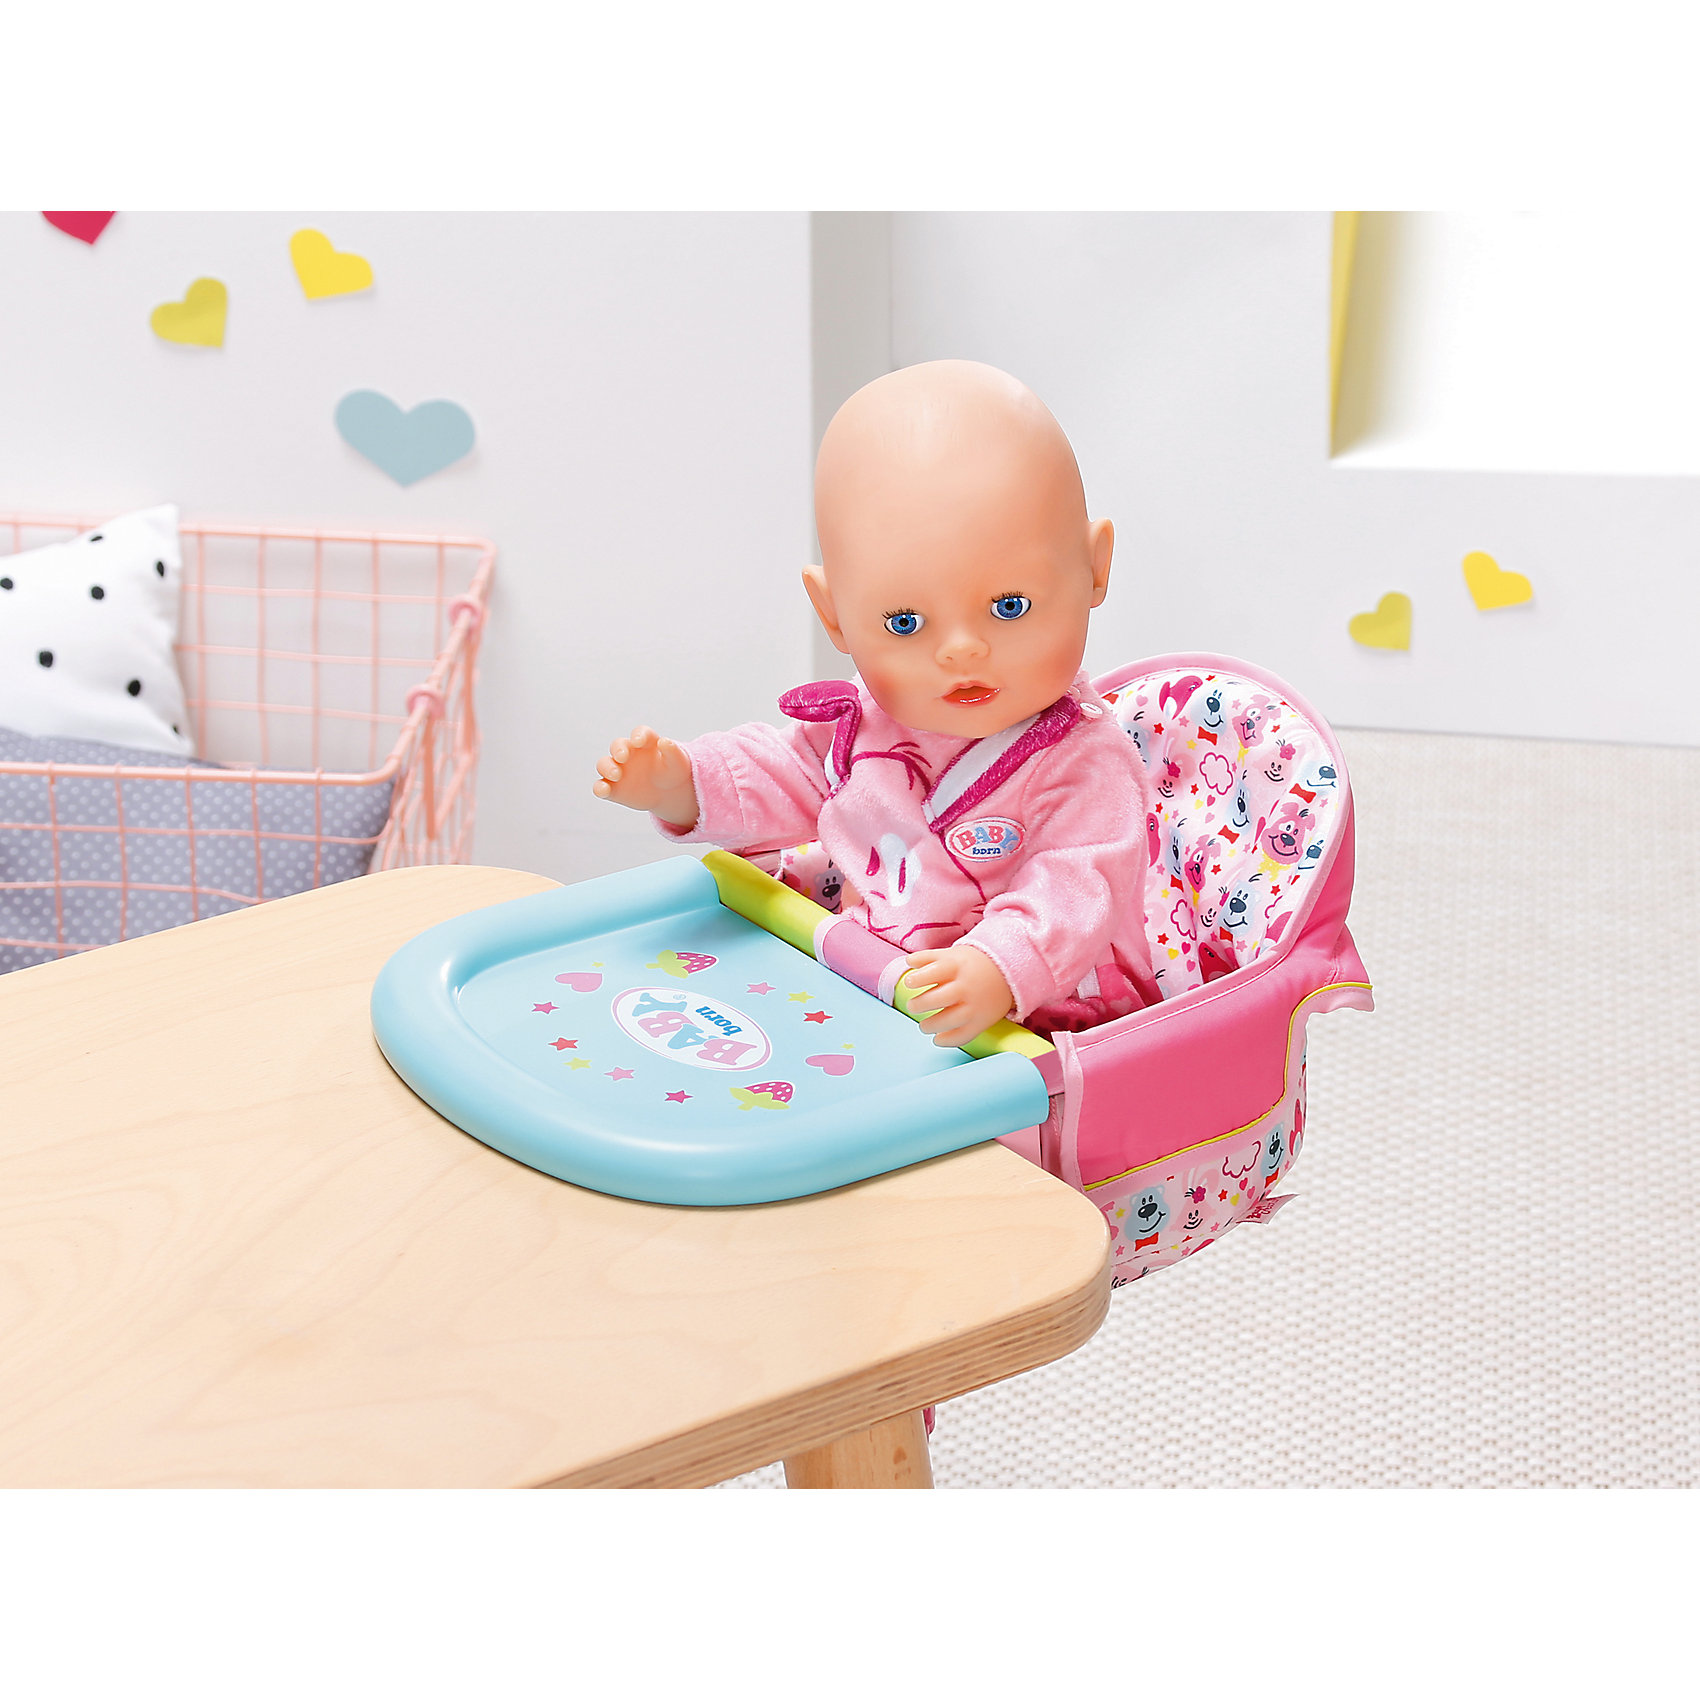 пеленальный столик для беби анабель